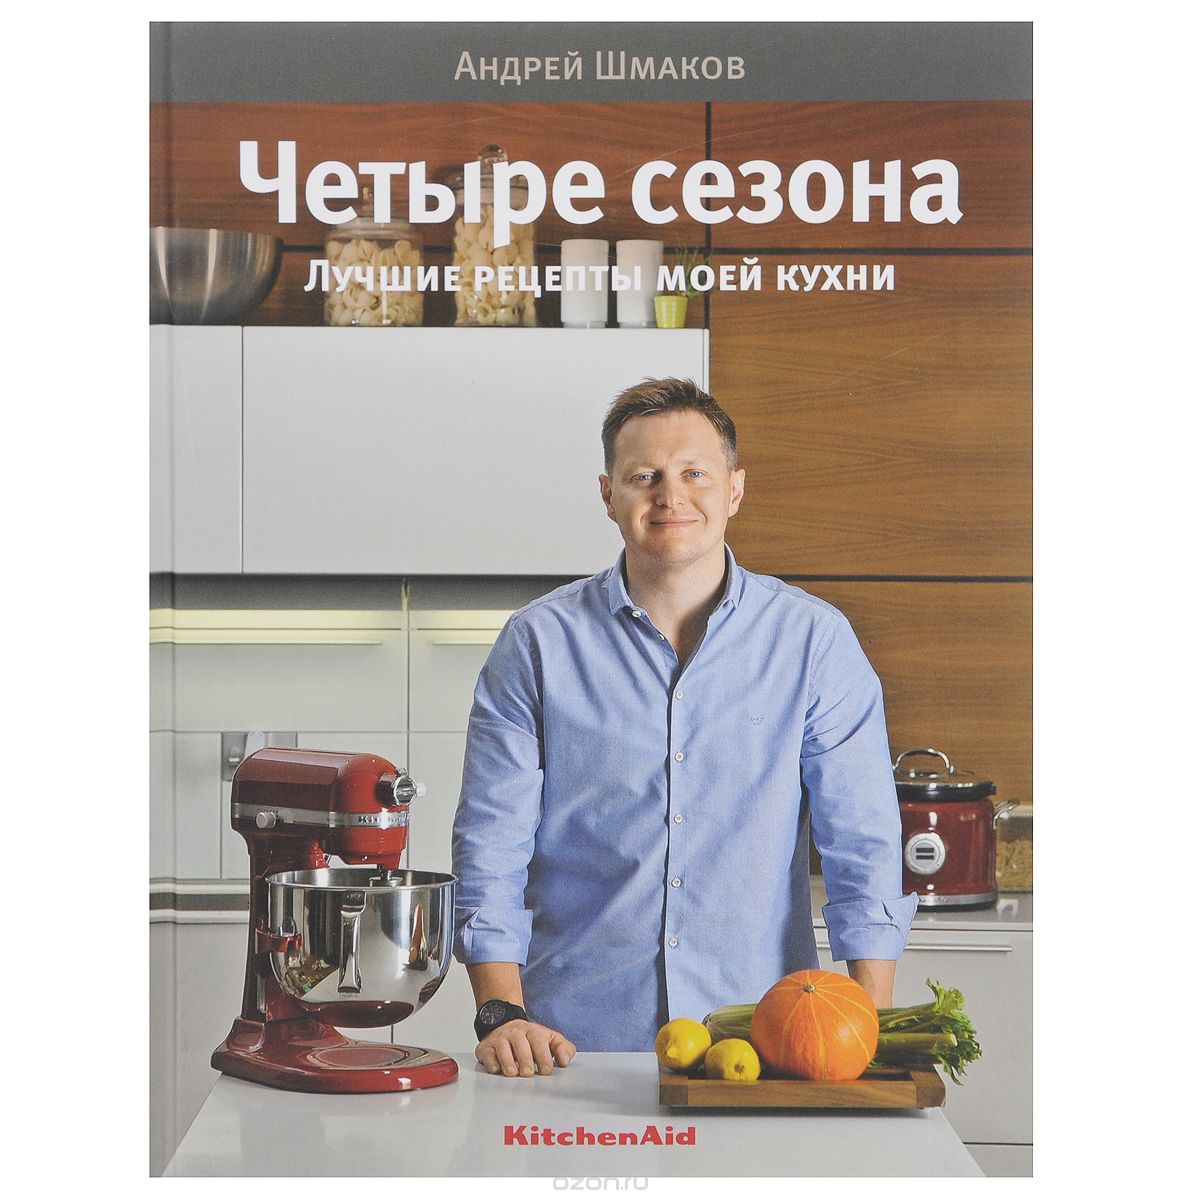 Скачать книгу "Четыре сезона. Лучшие рецепты моей кухни, Андрей Шмаков"